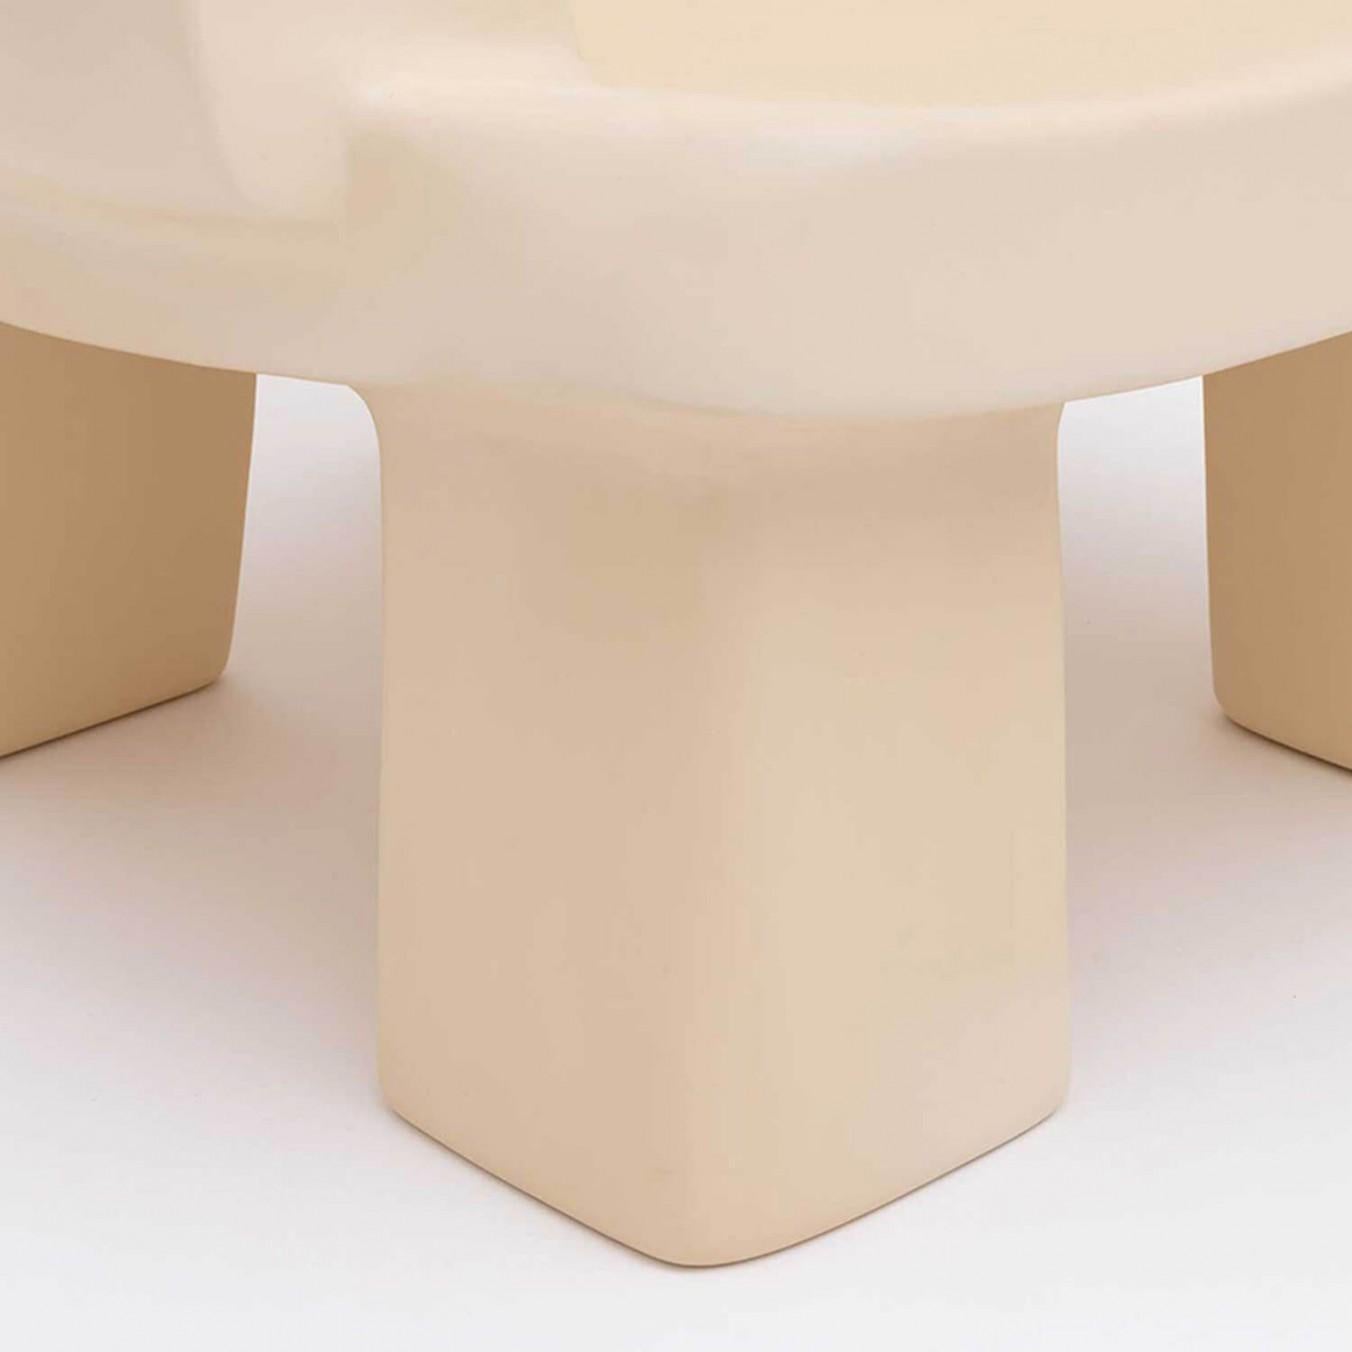 Fauteuil contemporain en fibre de verre - Fudge Chair par Faye Toogood. Ce modèle est présenté dans la finition crème en fibre de verre. 
Design : Faye Toogood
Matériau : Fibre de verre 
Disponible également en finition opaque anthracite,